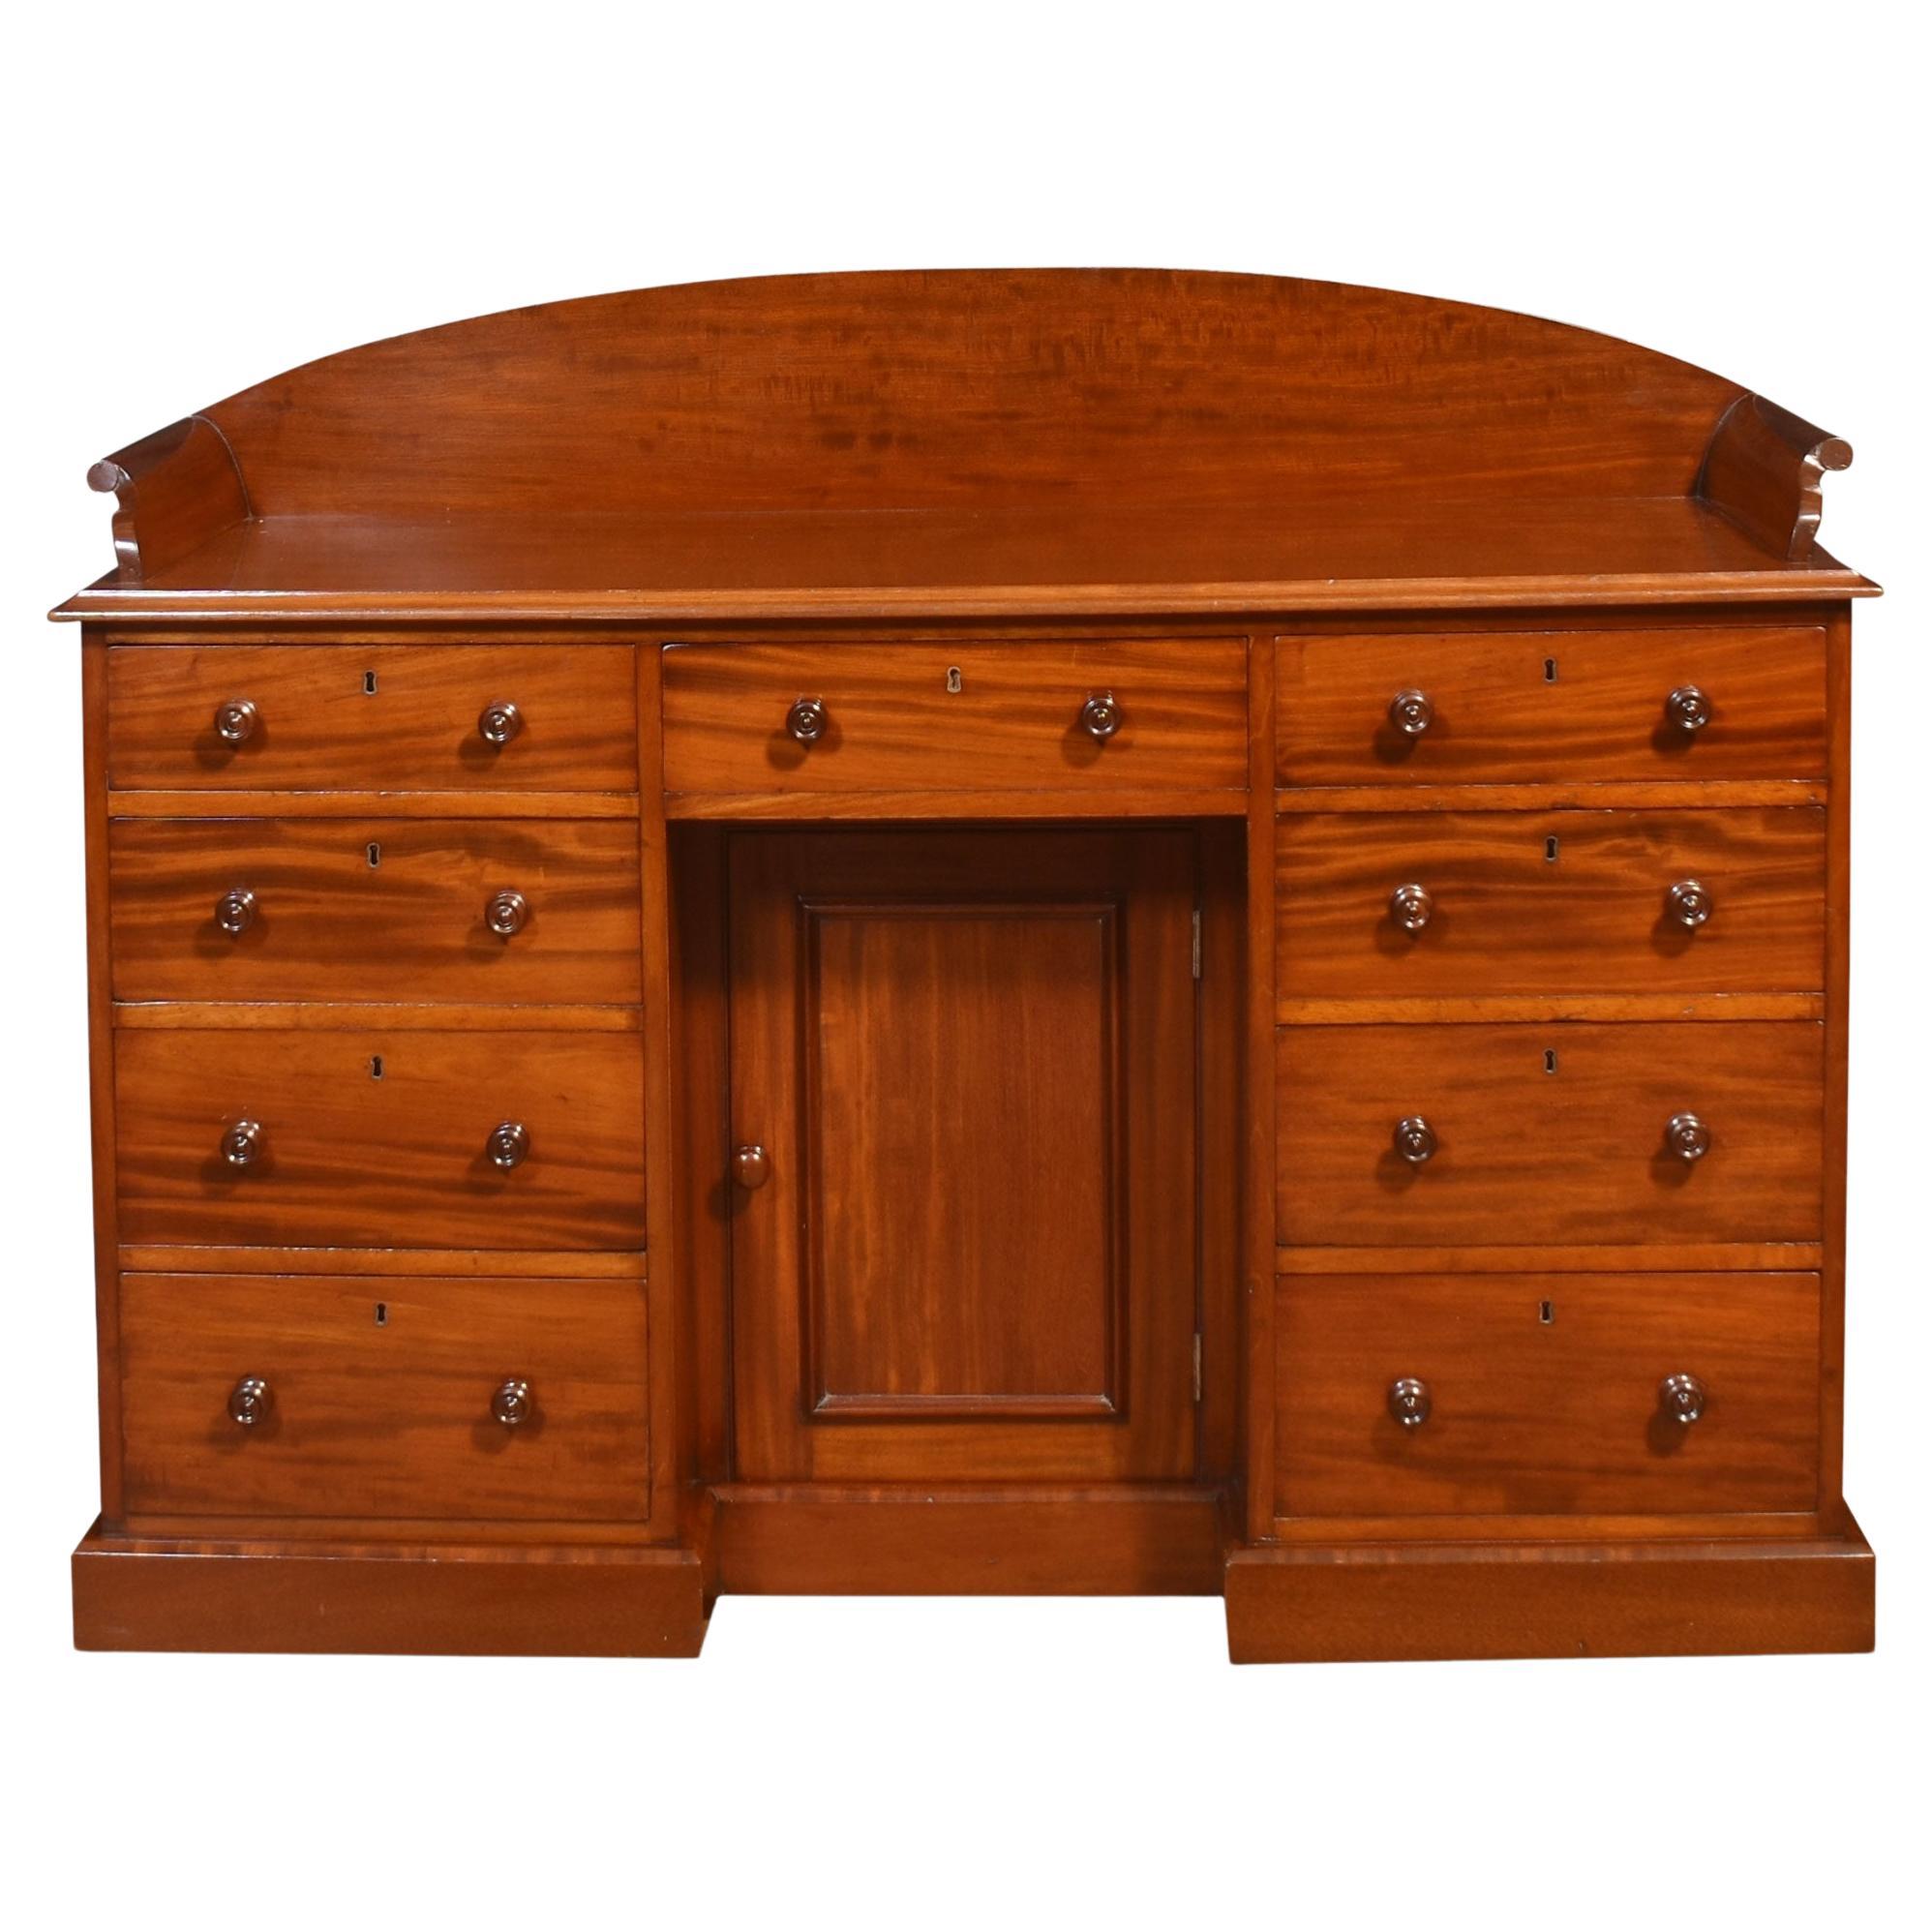 19th century mahogany dressing table